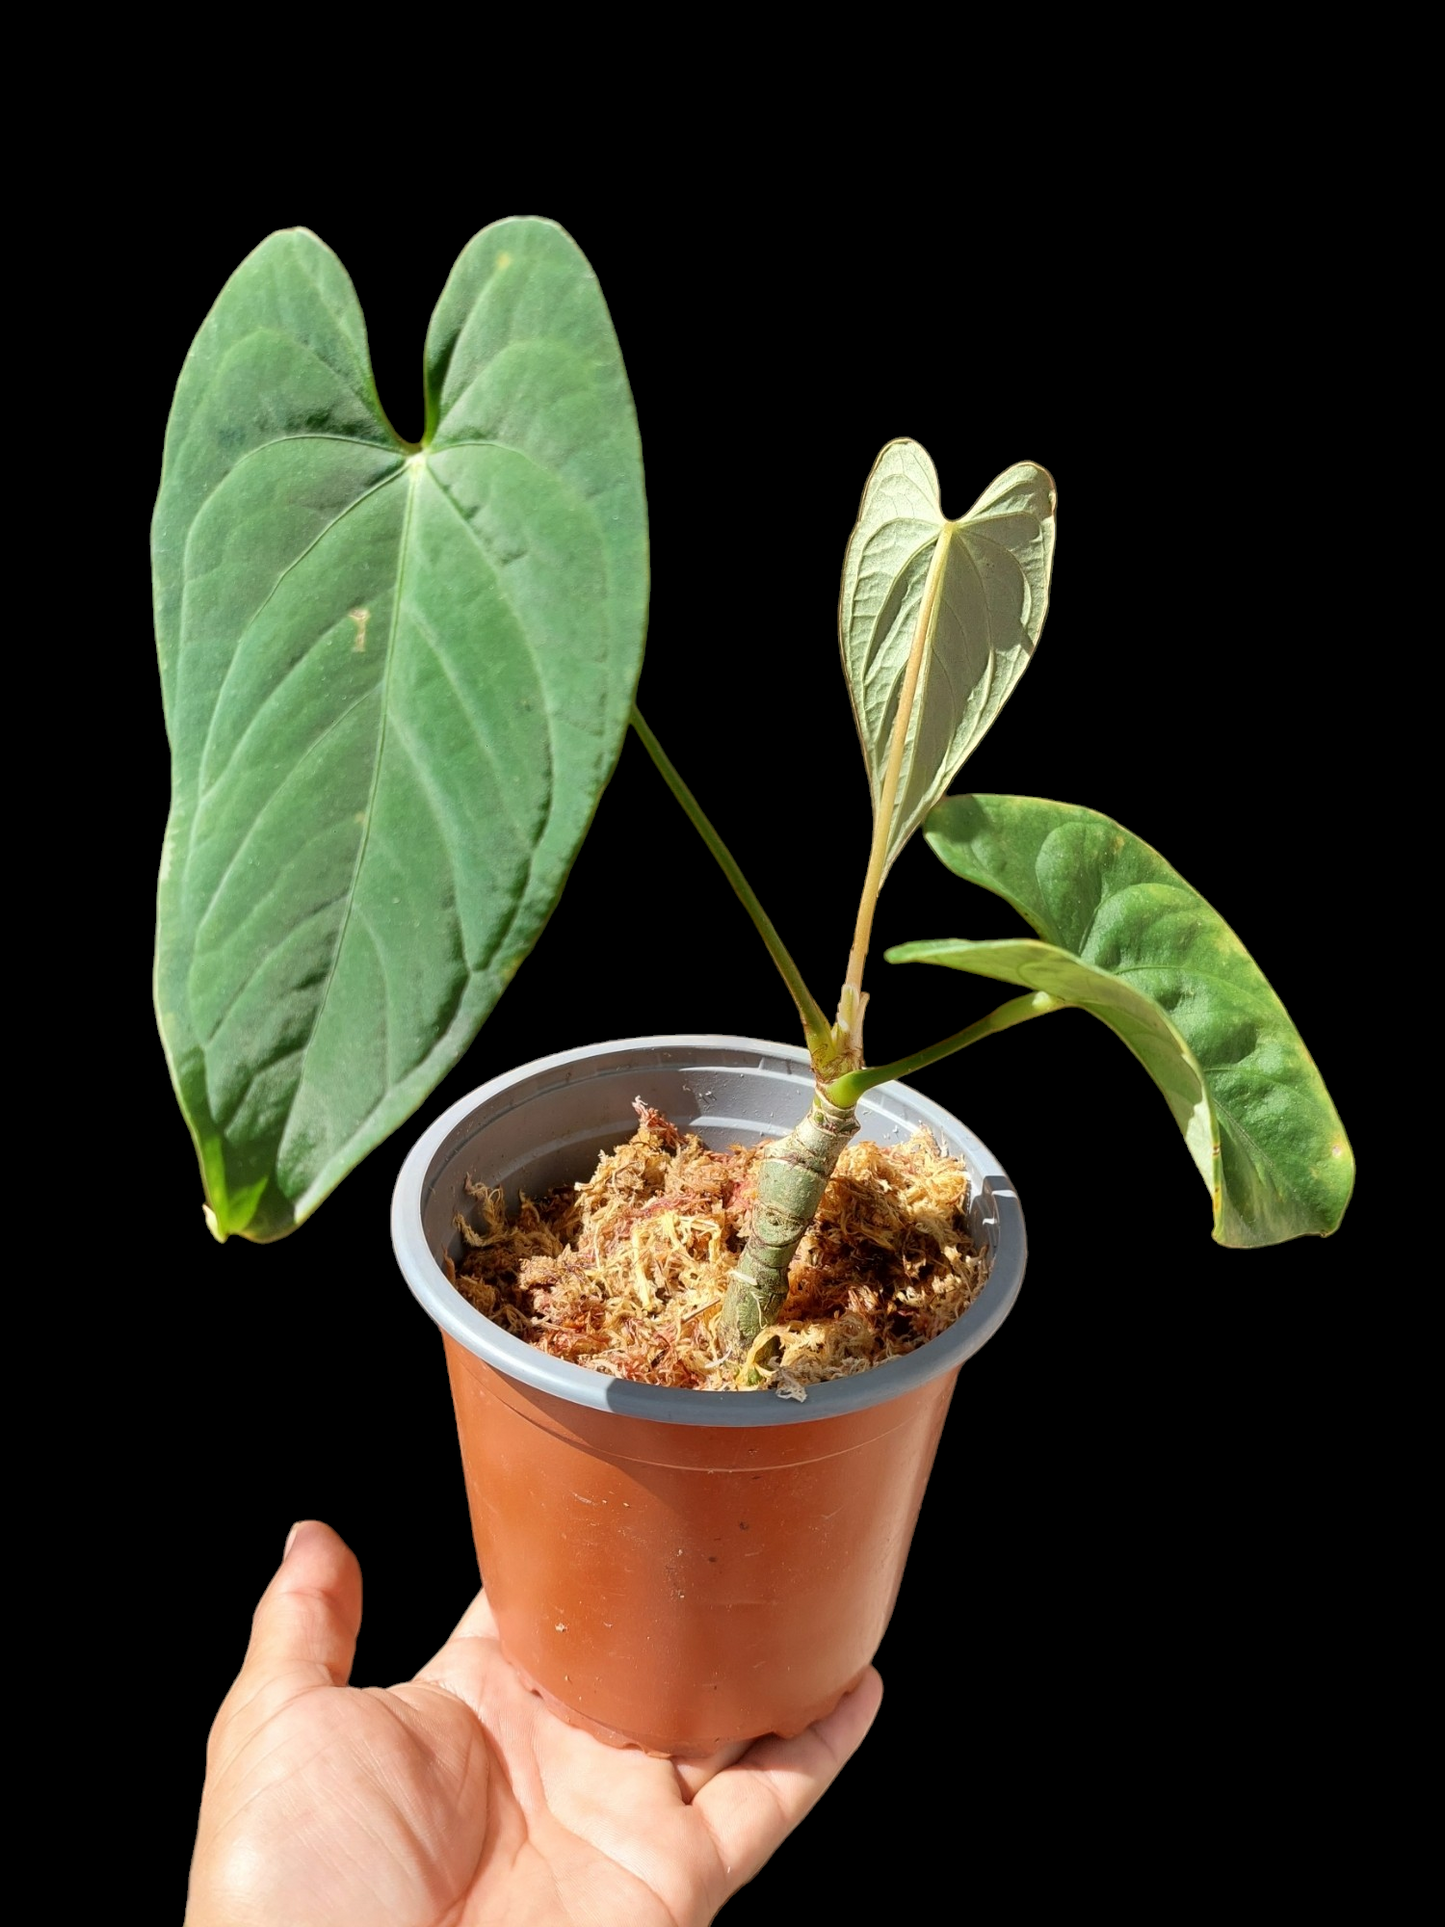 Anthurium sp. "Tarapoto Velvet" A0121 (EXACT PLANT)